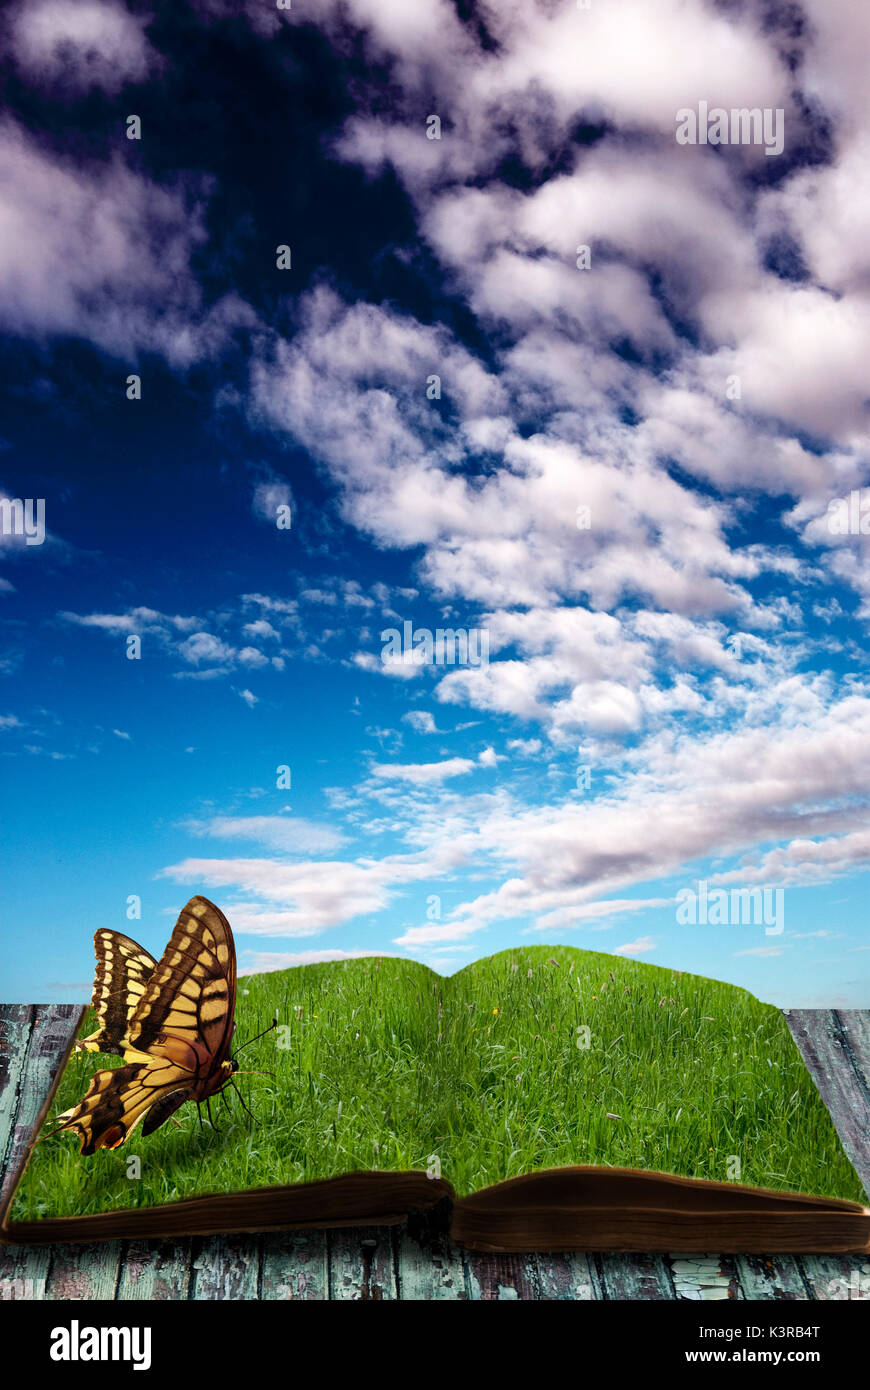 Schmetterling sitzt auf einem offenen Buch mit Seiten aus grünem Gras, Phantasie und Kreativität Konzept Stockfoto